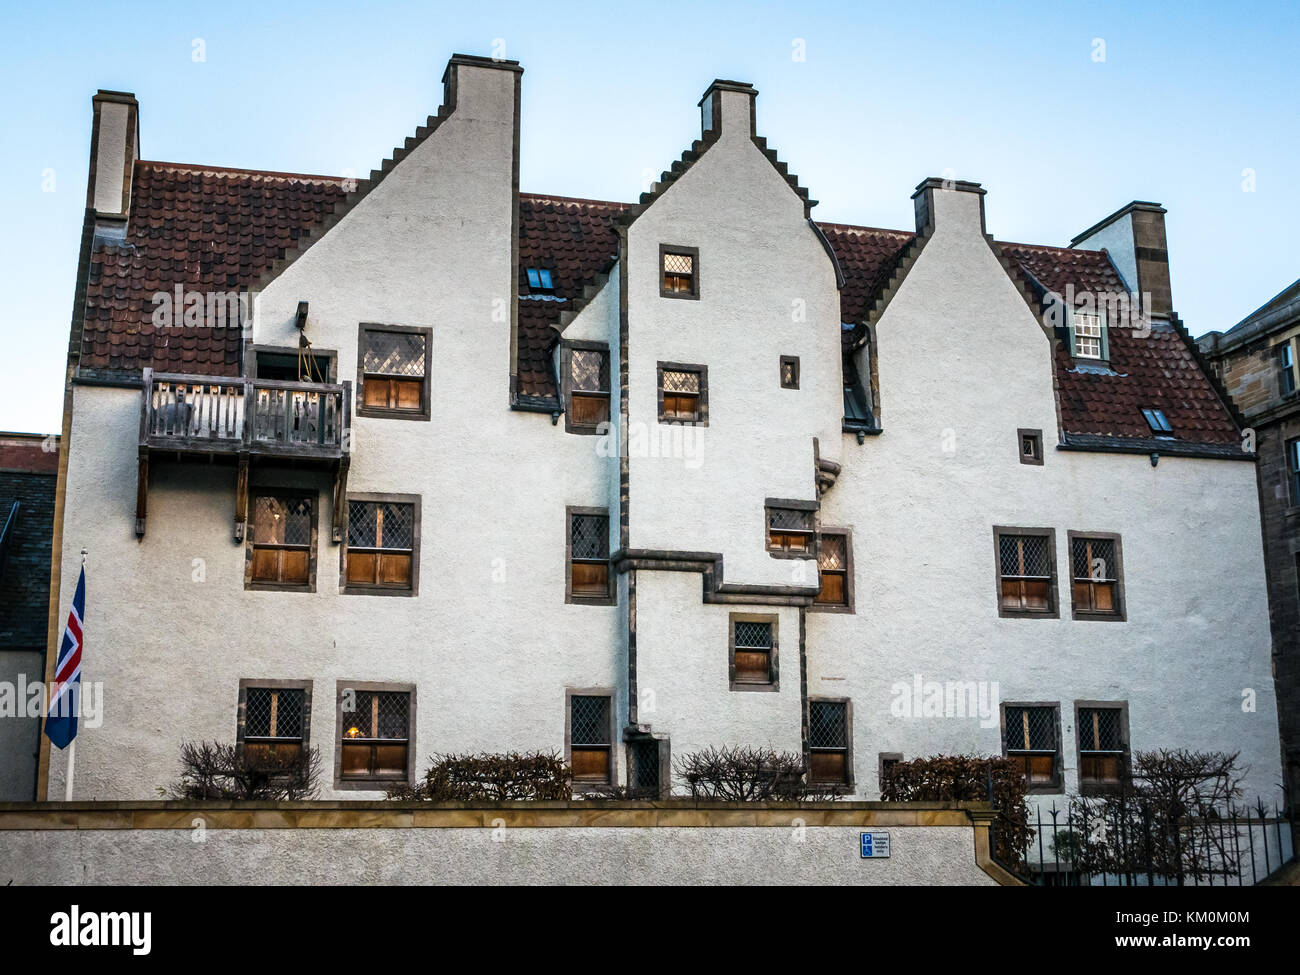 Giebelhäuser aus dem 17. Jahrhundert hanseatisches Handelshaus, Lämmer Haus, Leith, Edinburgh, Schottland, Großbritannien, isländische Konsulat Flagge, Kategorie A, denkmalgeschützte Gebäude Stockfoto